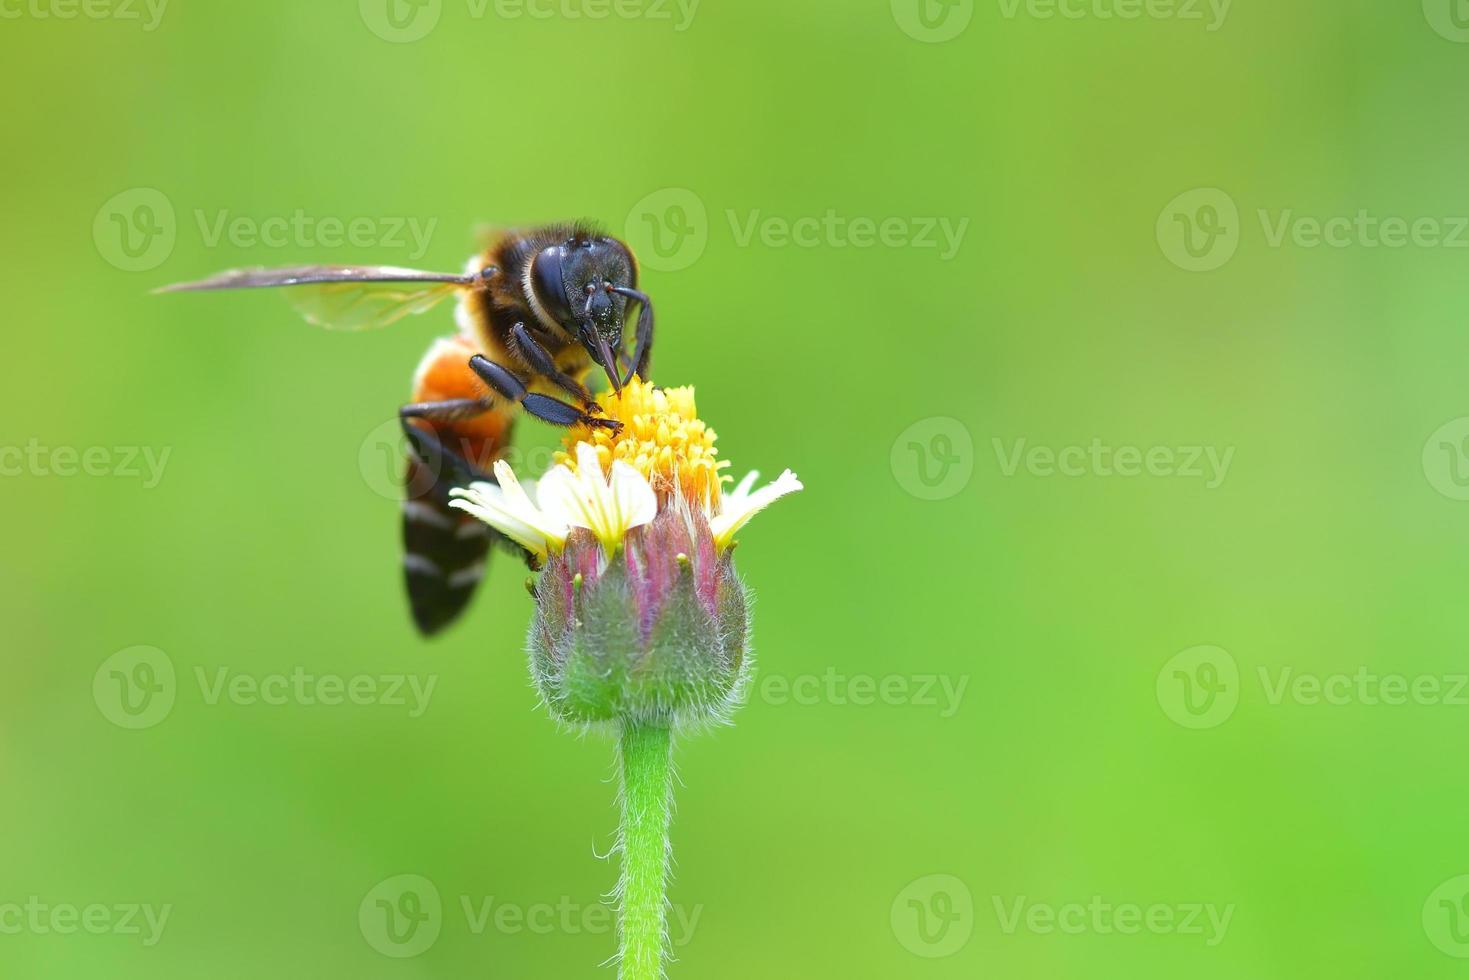 una abeja posada en la hermosa flor foto